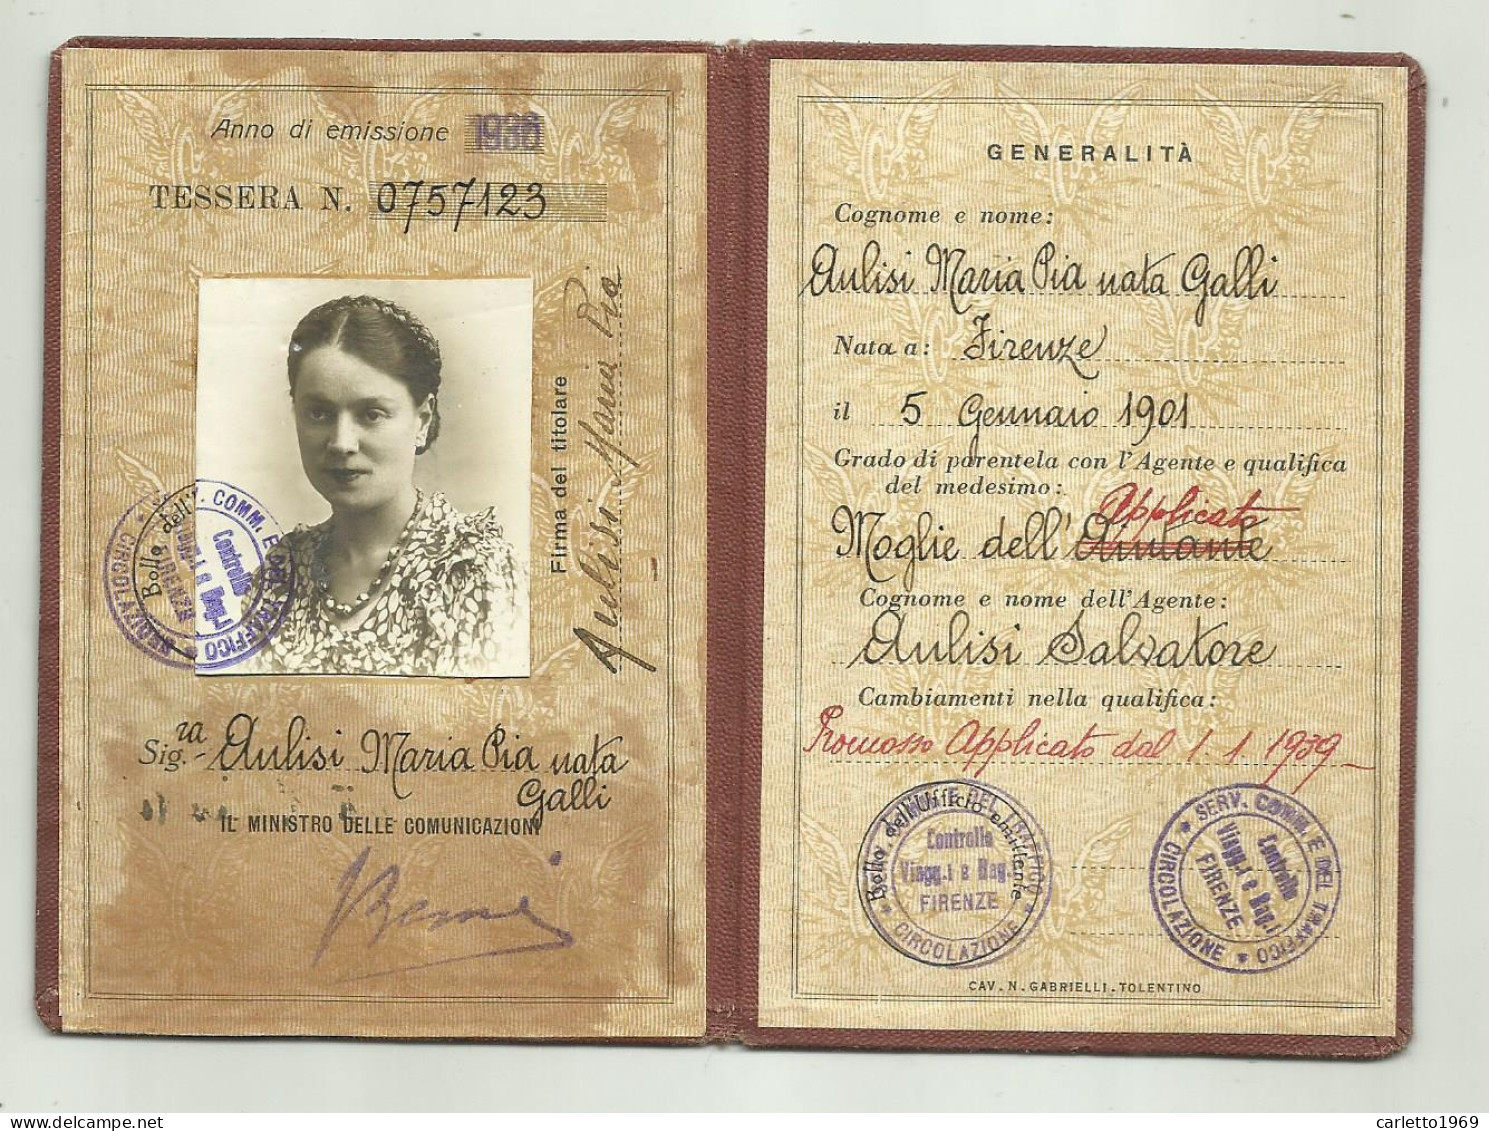 TESSERA DI RICONOSCIMENTO FERROVIE DELLO STATO 1936 FIRENZE - Mitgliedskarten